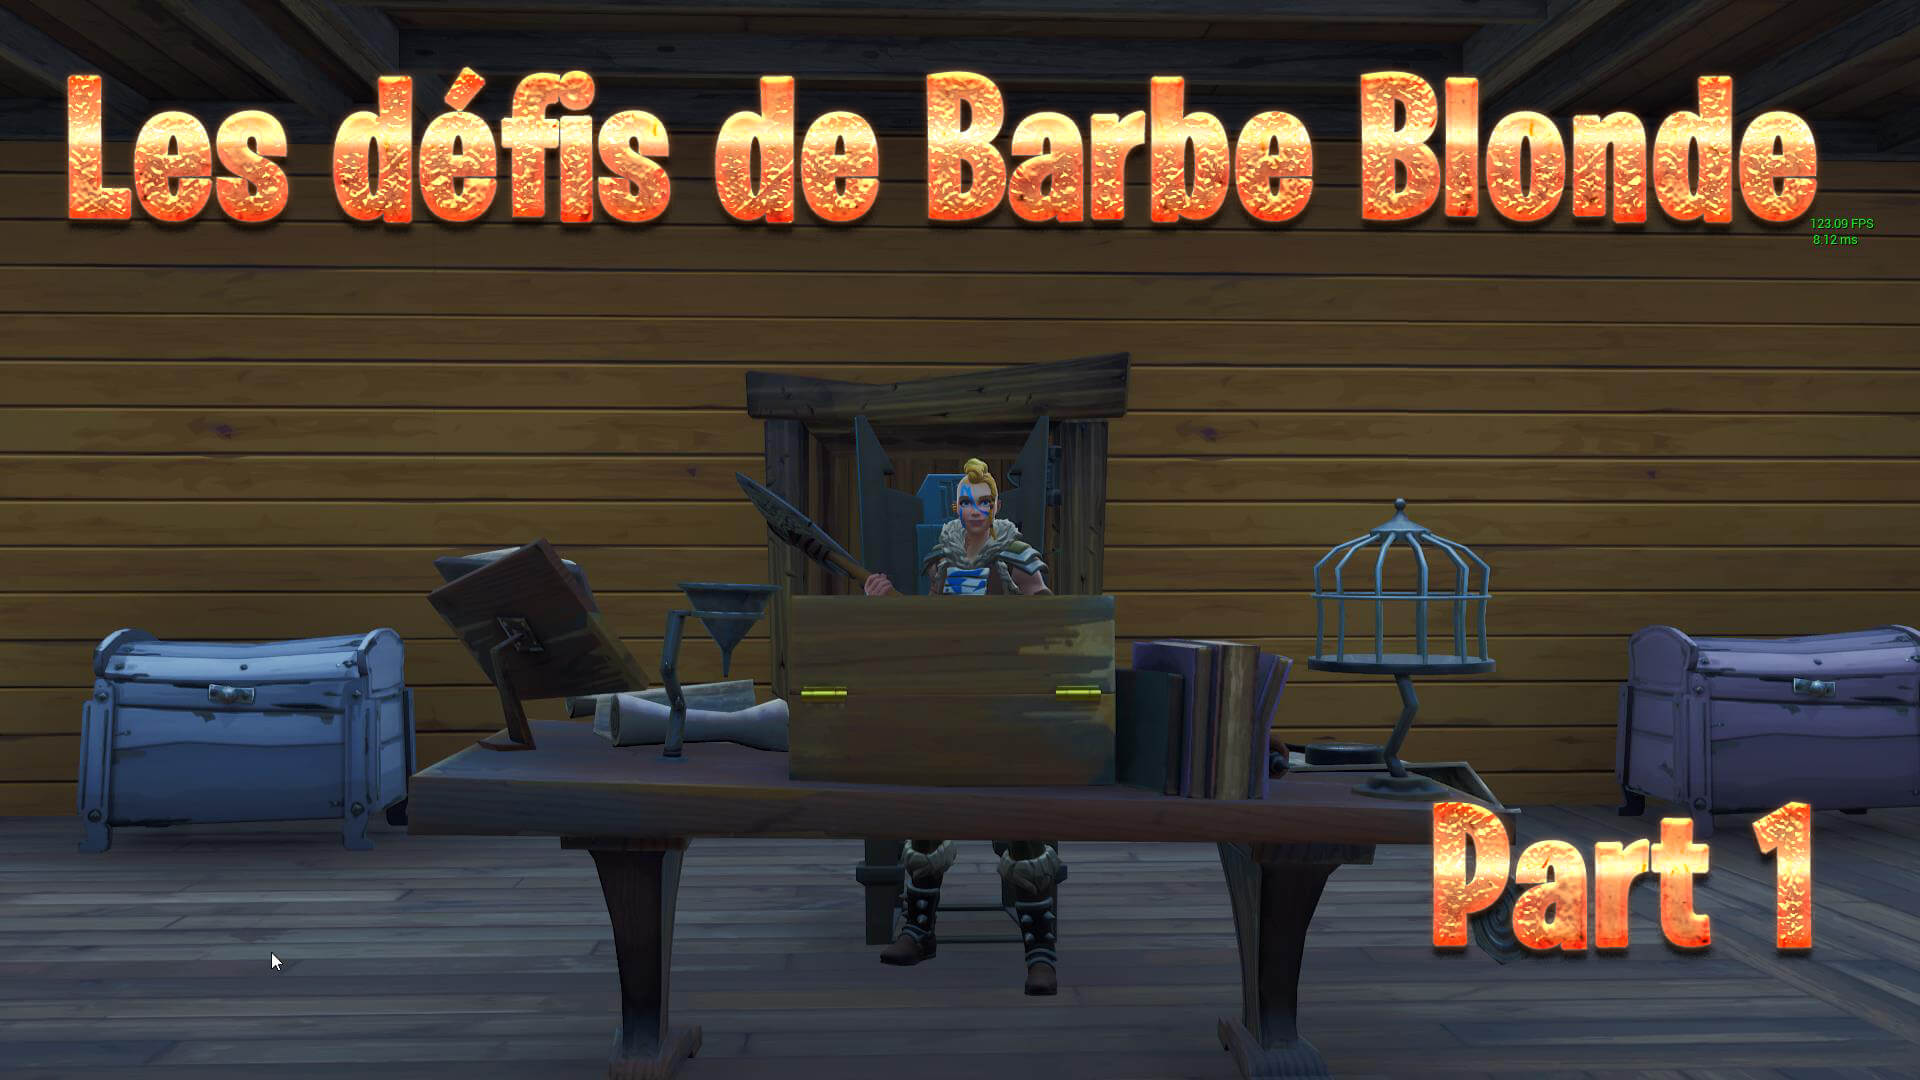 LES DEFIS DE BARBE BLONDE - #PART1